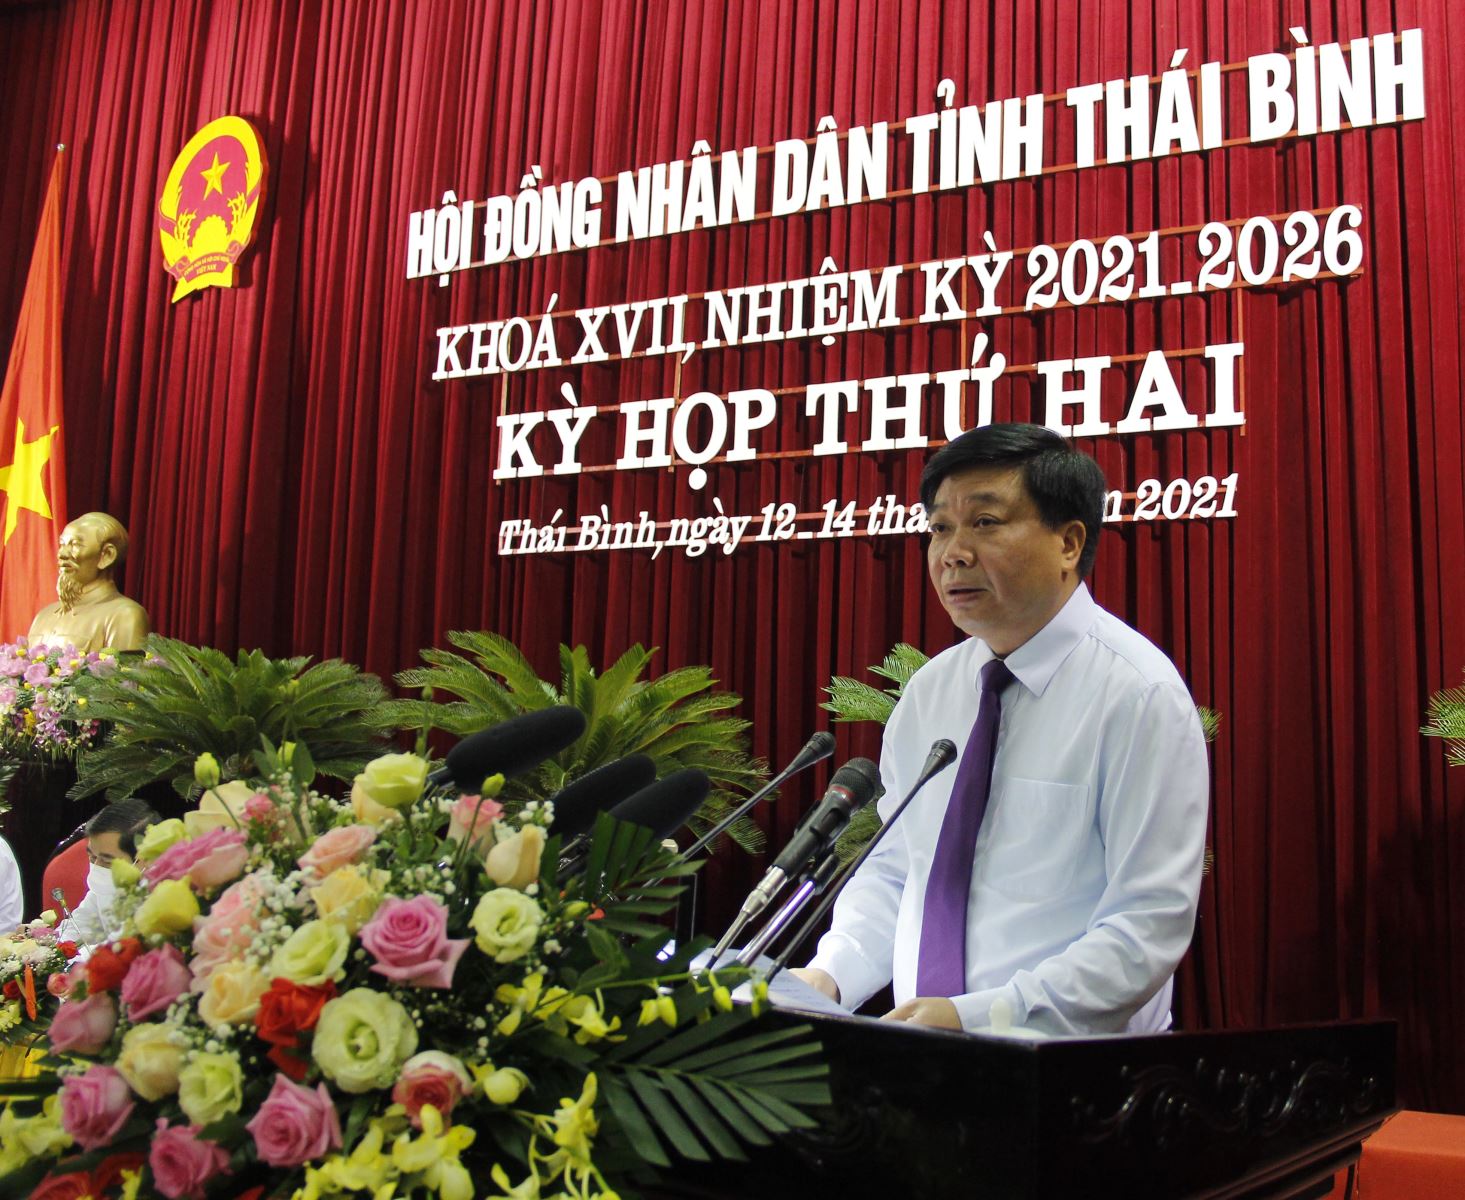 Phó Chủ tịch Thường trực UBND tỉnh Nguyễn Quang Hưng thay mặt UBND tỉnh báo cáo kết quả kinh tế - xã hội của tỉnh trong 6 tháng đầu năm  ​